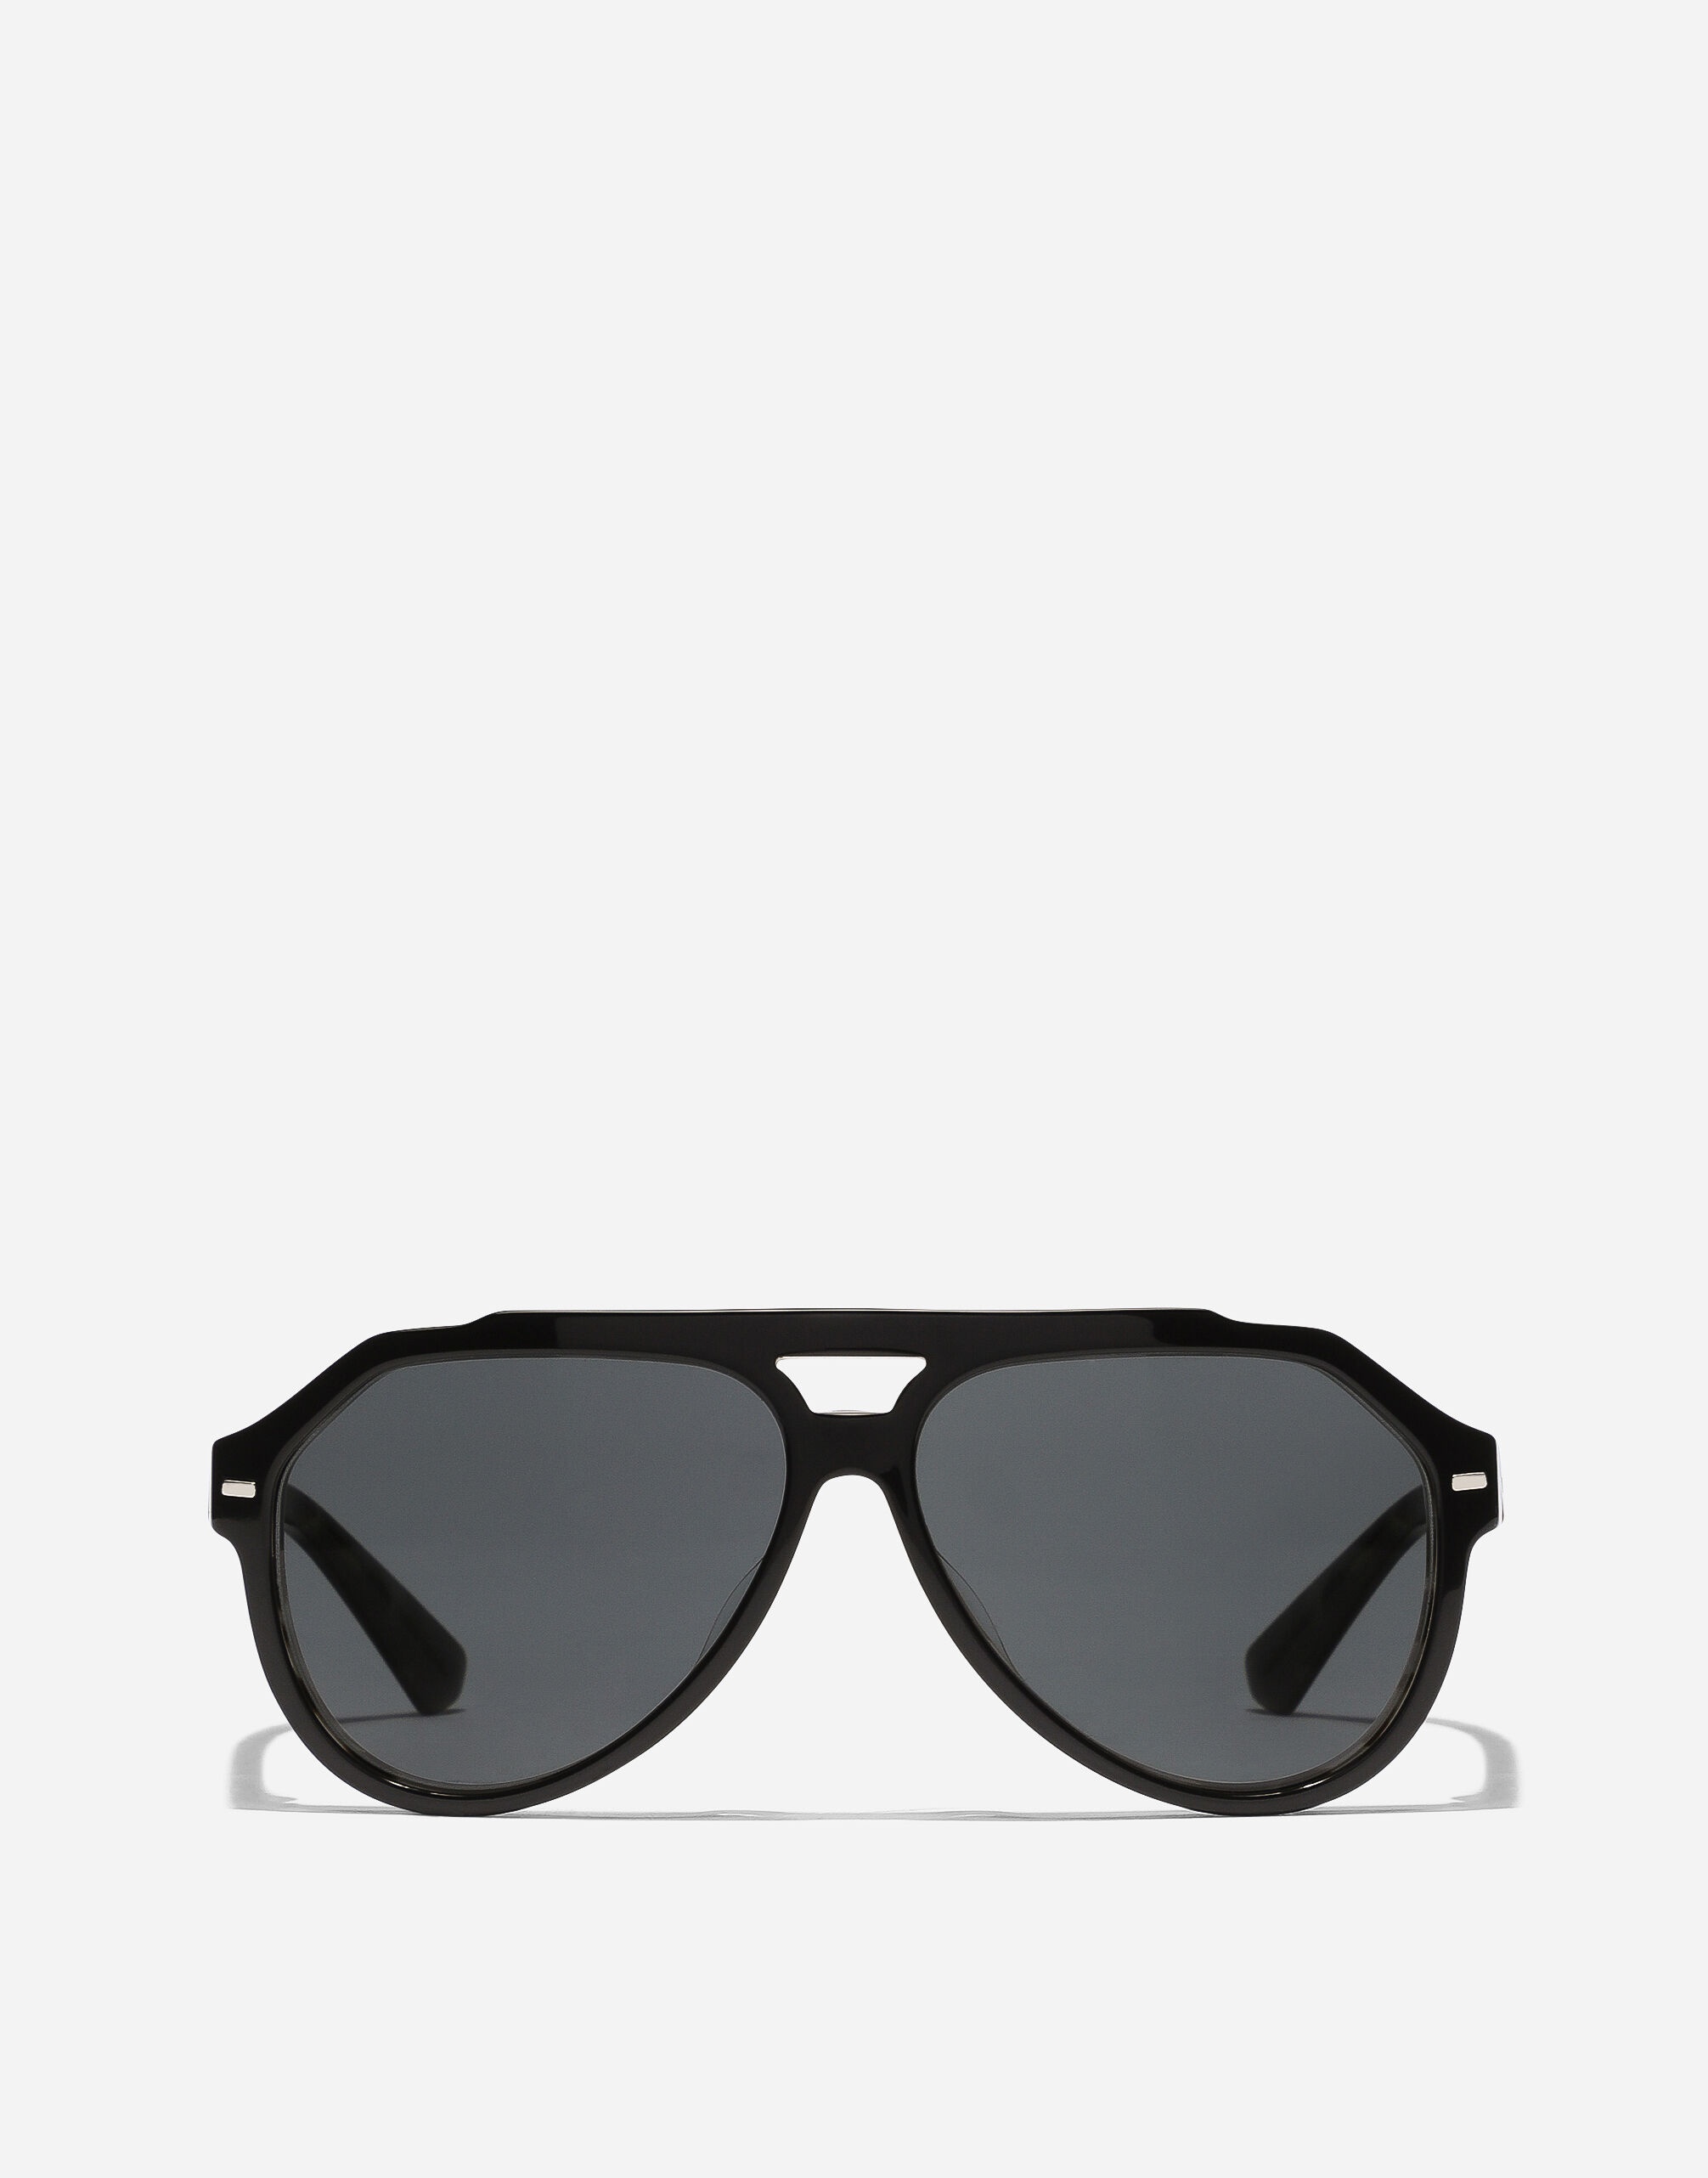 Lusso Sartoriale sunglasses - 1